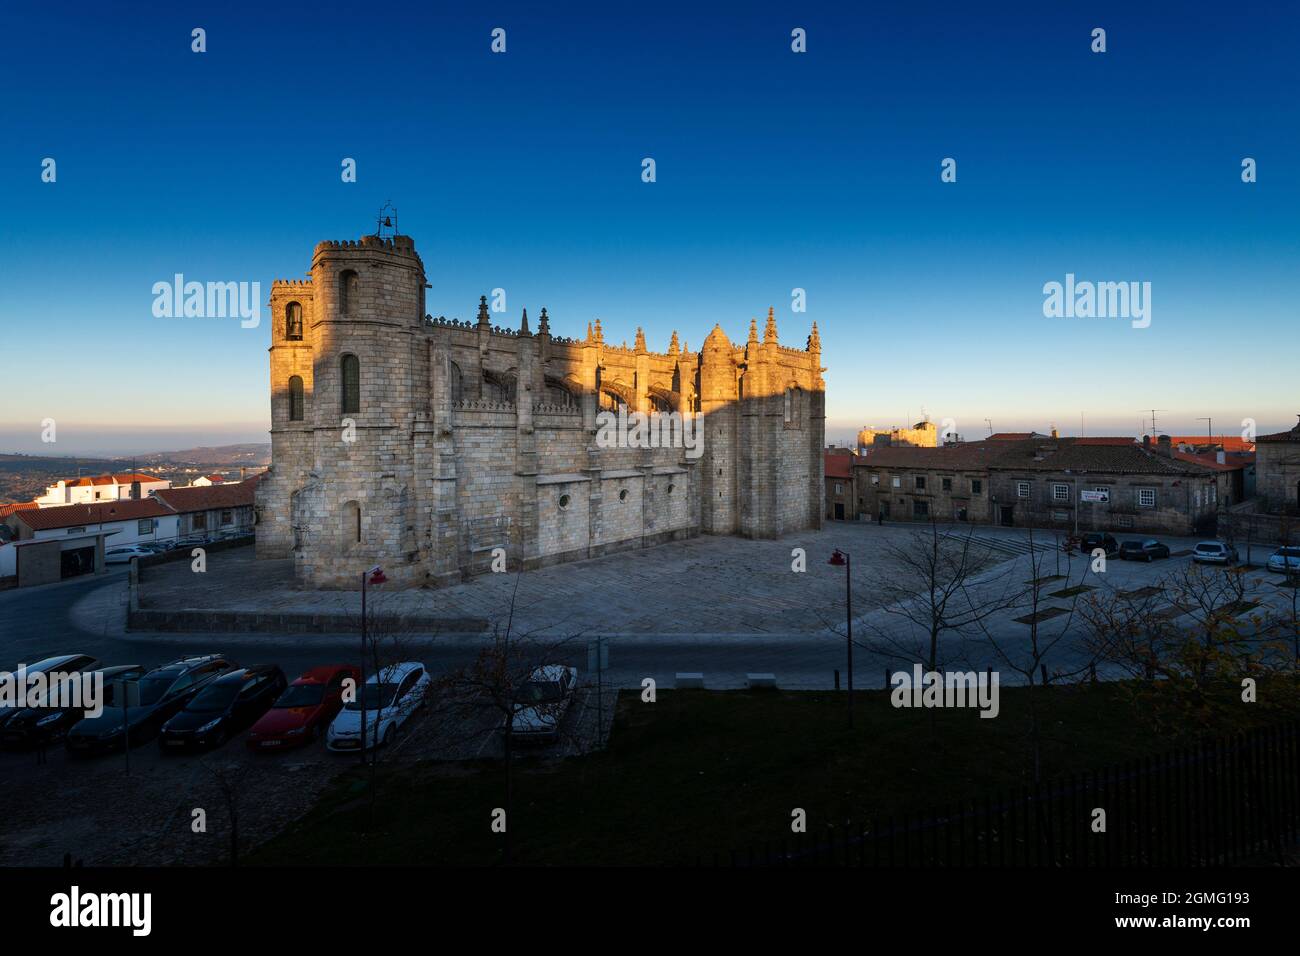 Guarda, Portugal - 28 de noviembre de 2015: La Catedral de Guarda (SE da Guarda) en el centro histórico de la ciudad de Guarda, Portugal Foto de stock